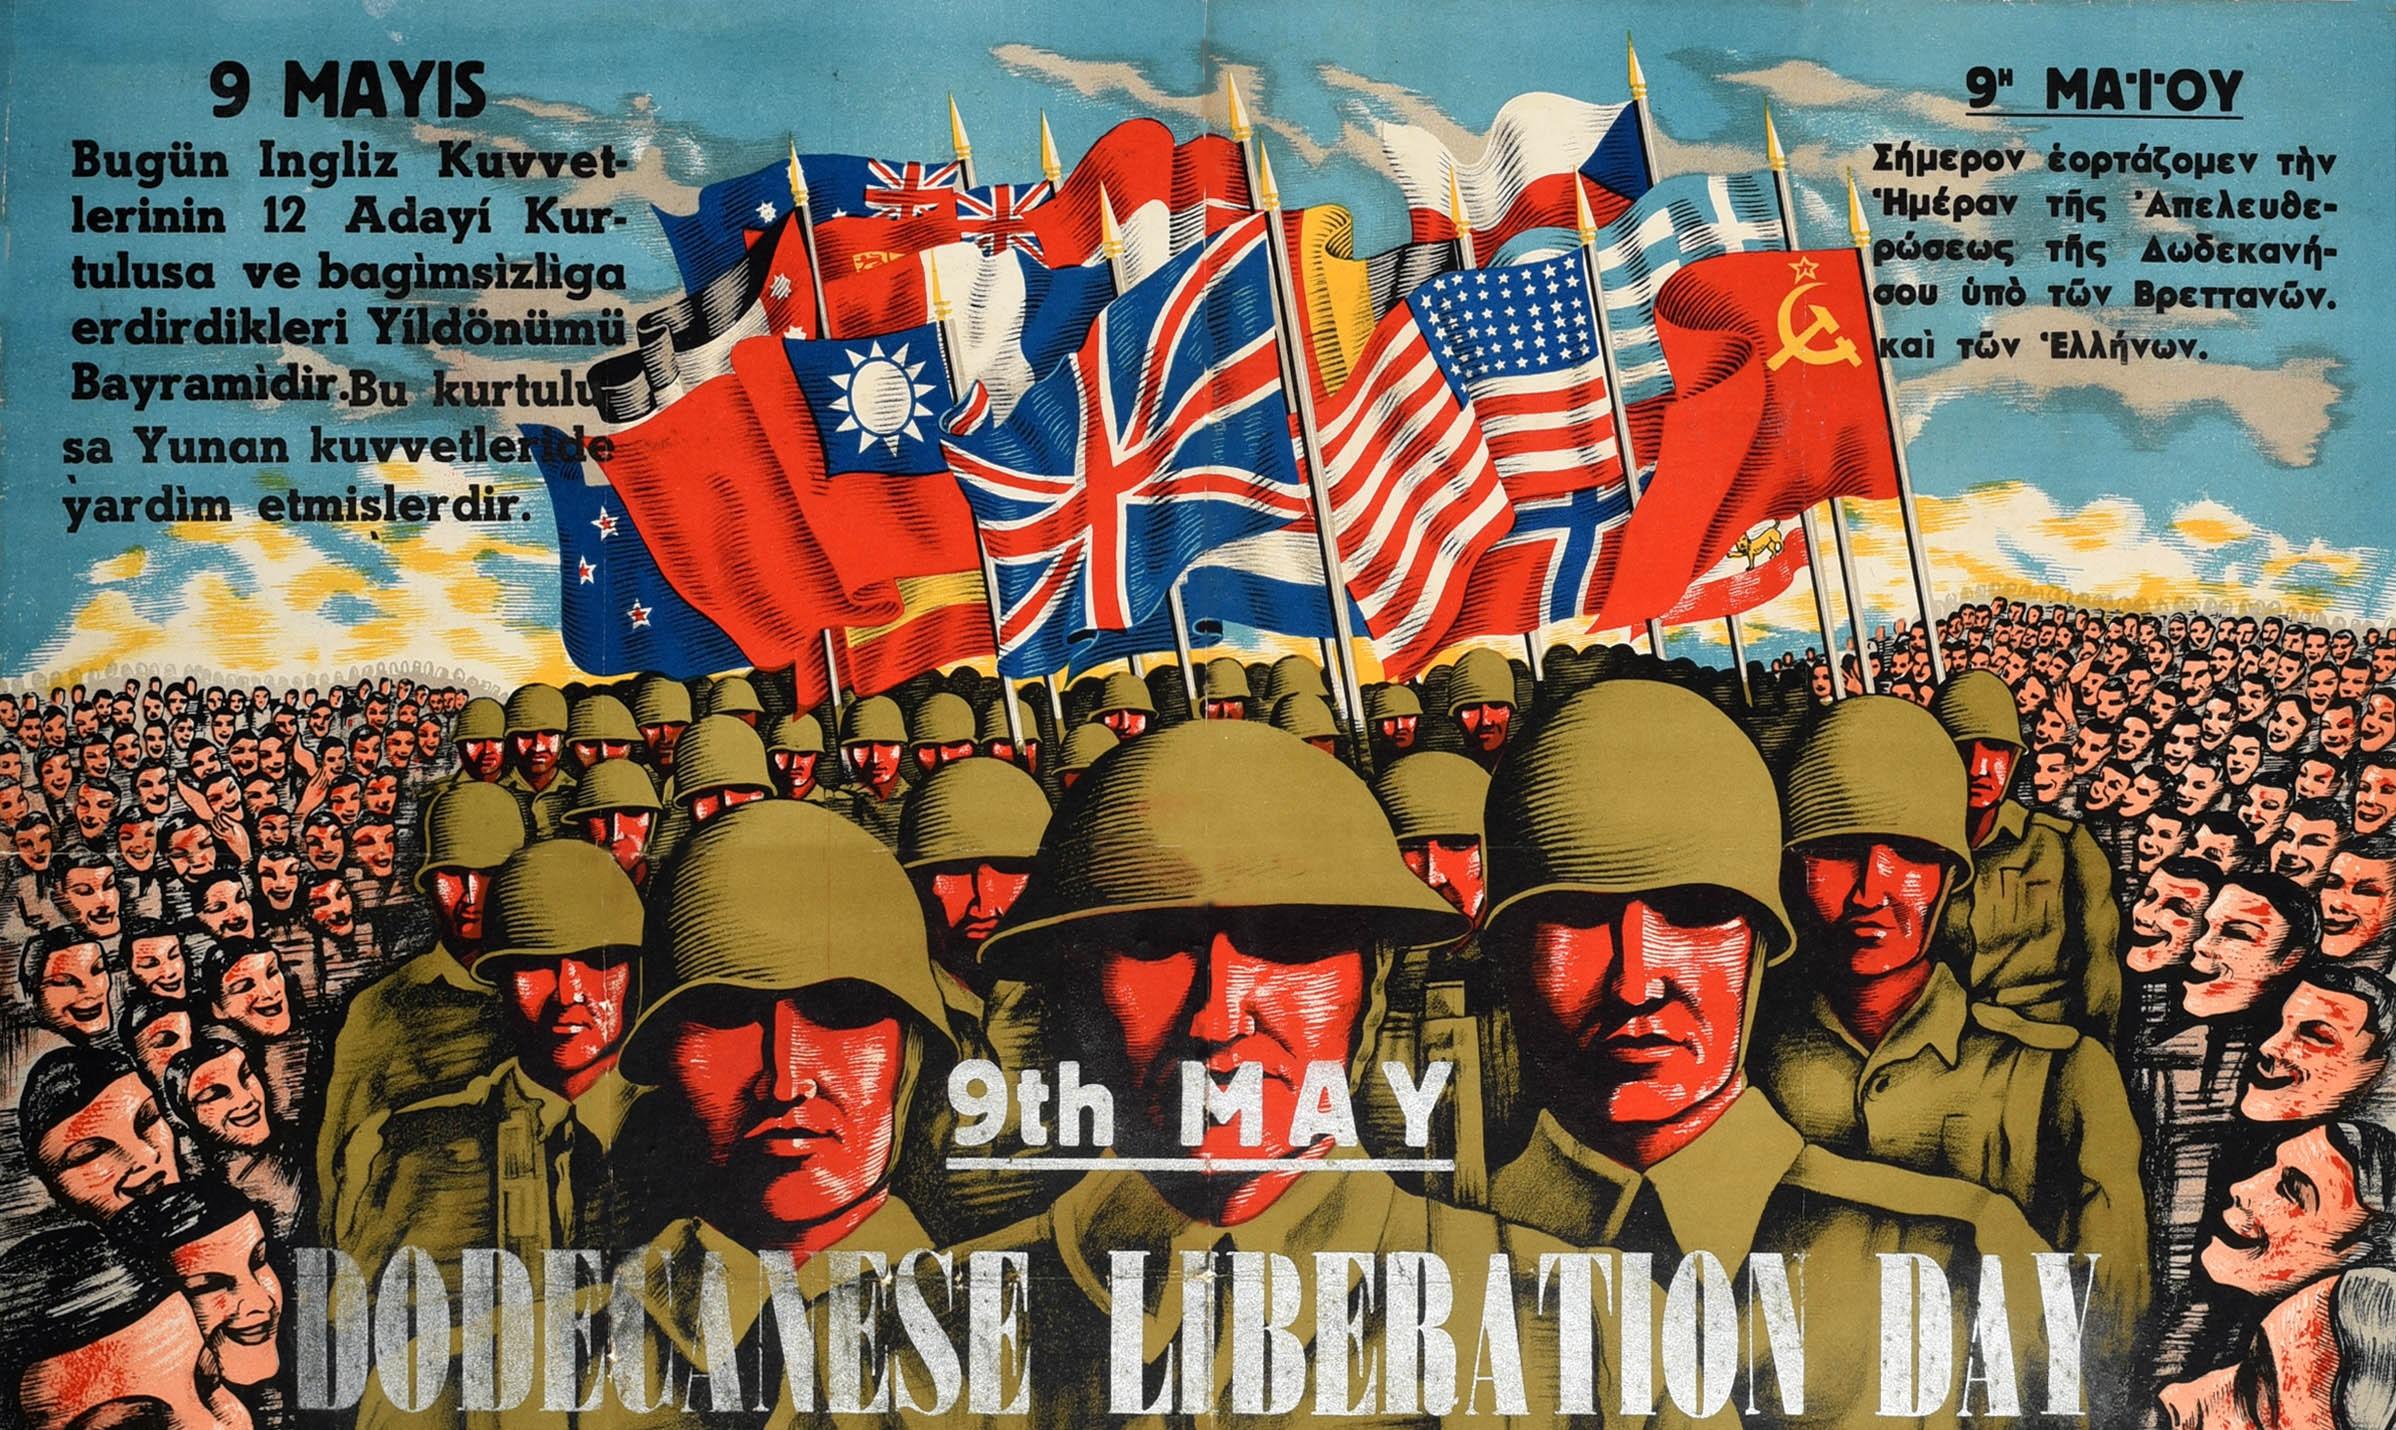 Affiche originale d'après-guerre célébrant le premier anniversaire de la libération des îles du Dodécanèse par les Alliés des forces d'occupation nazies allemandes - Journée de la libération du Dodécanèse le 9 mai 1946 - montrant des foules de gens